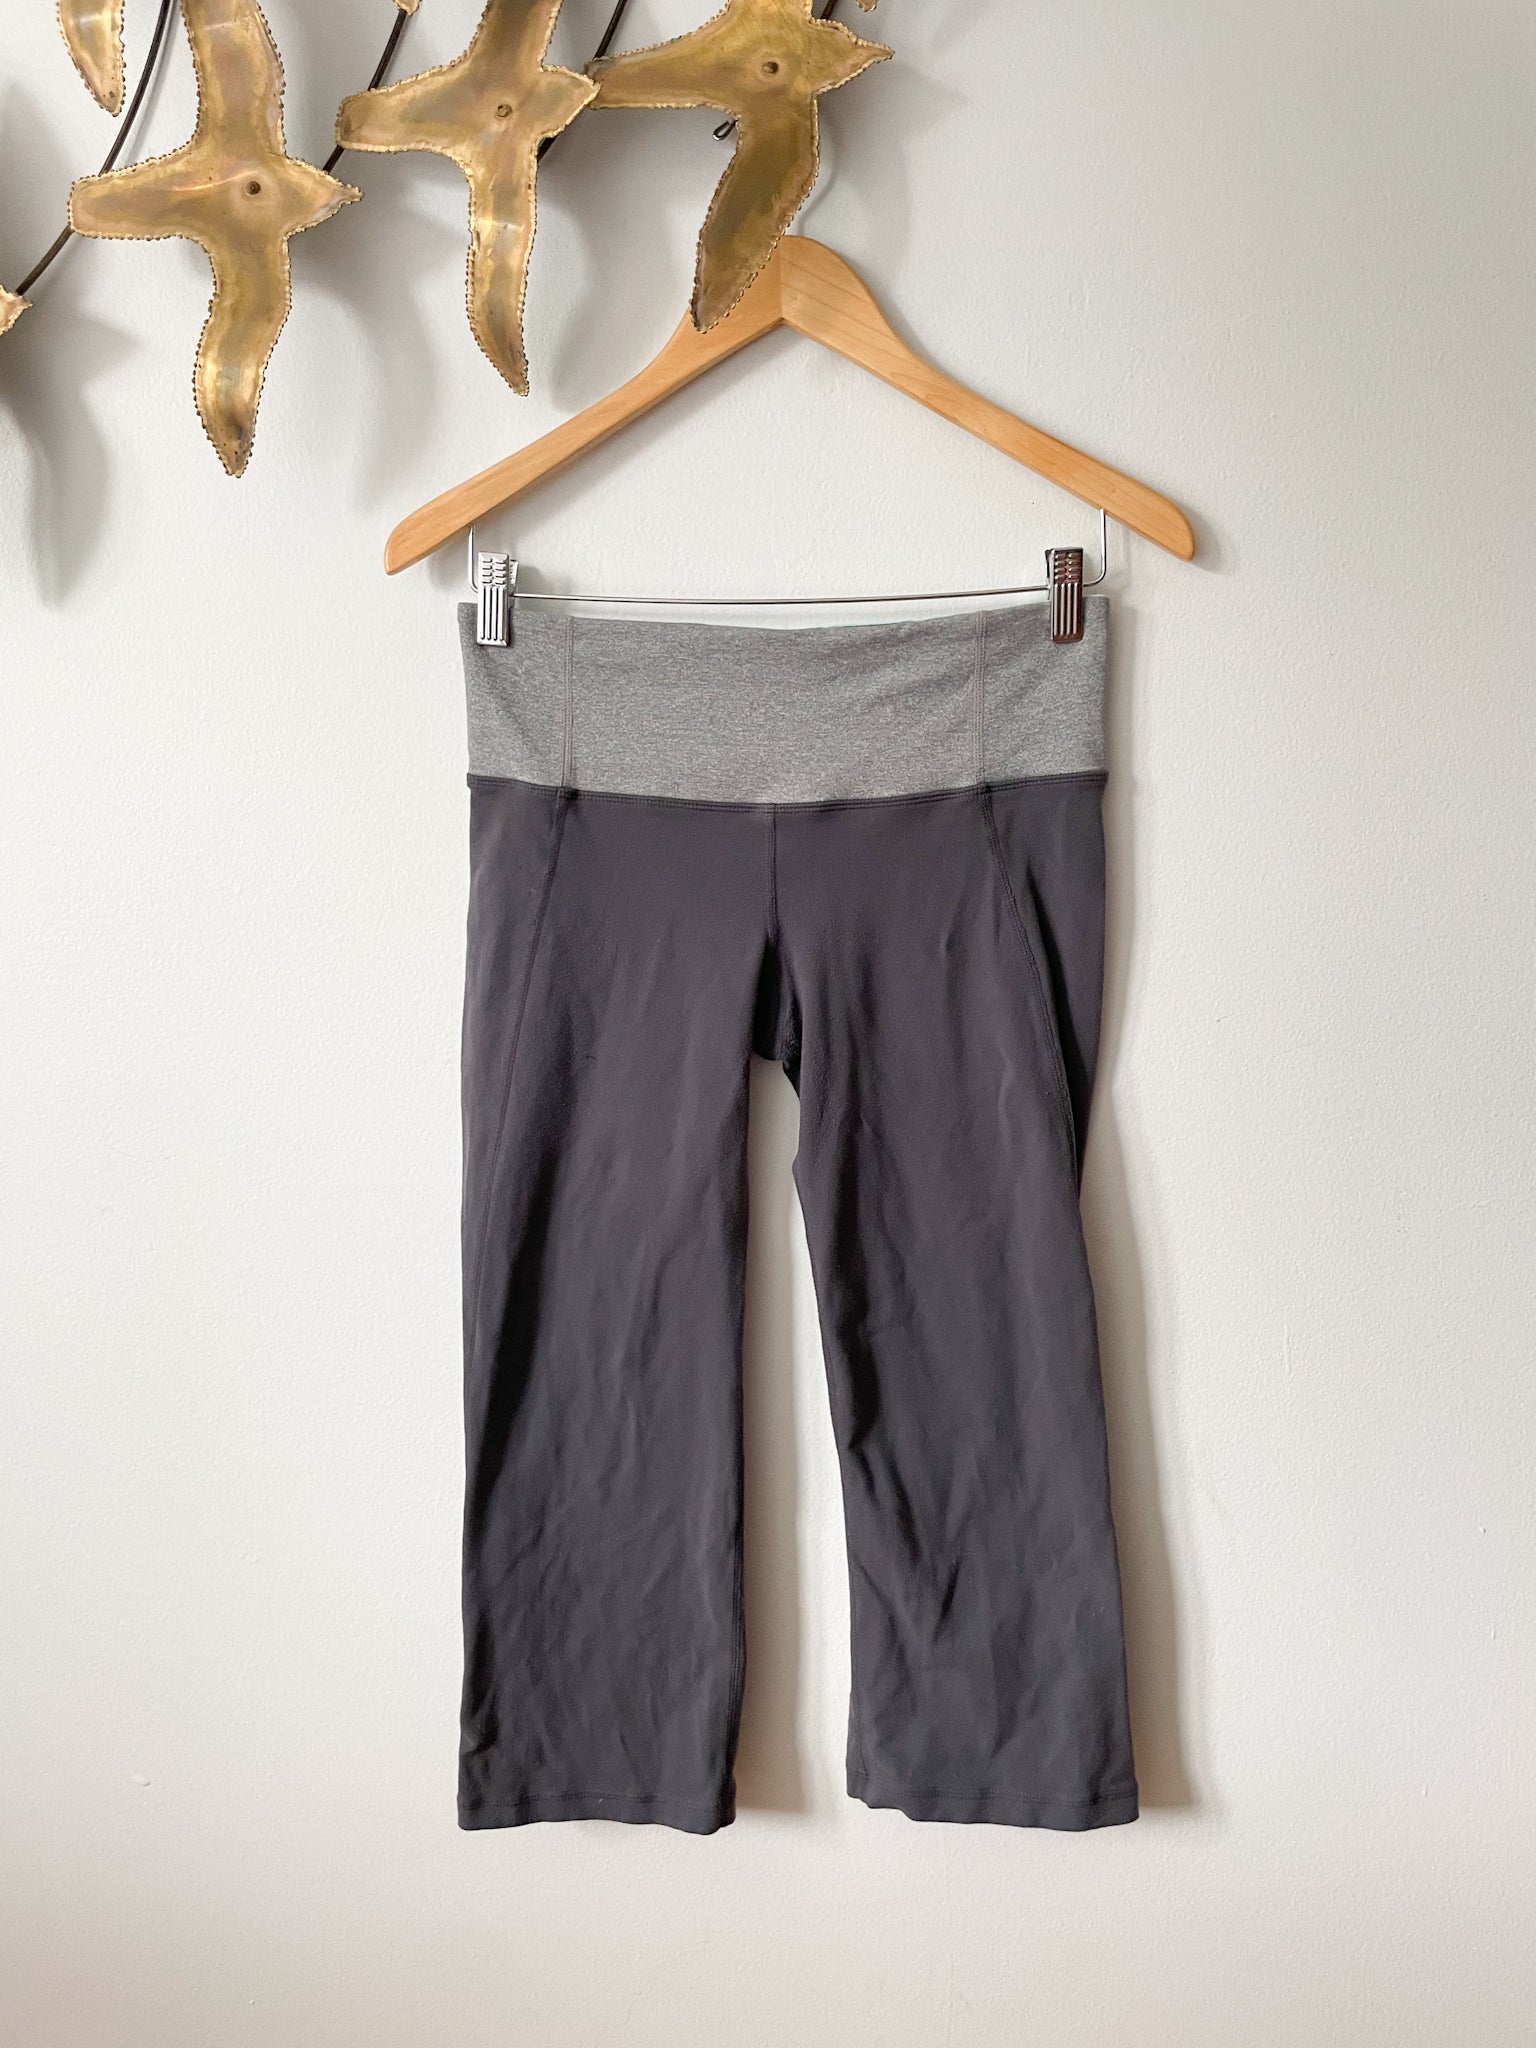 lululemon - Dance Studio Mid-rise Full-length Pants on Designer